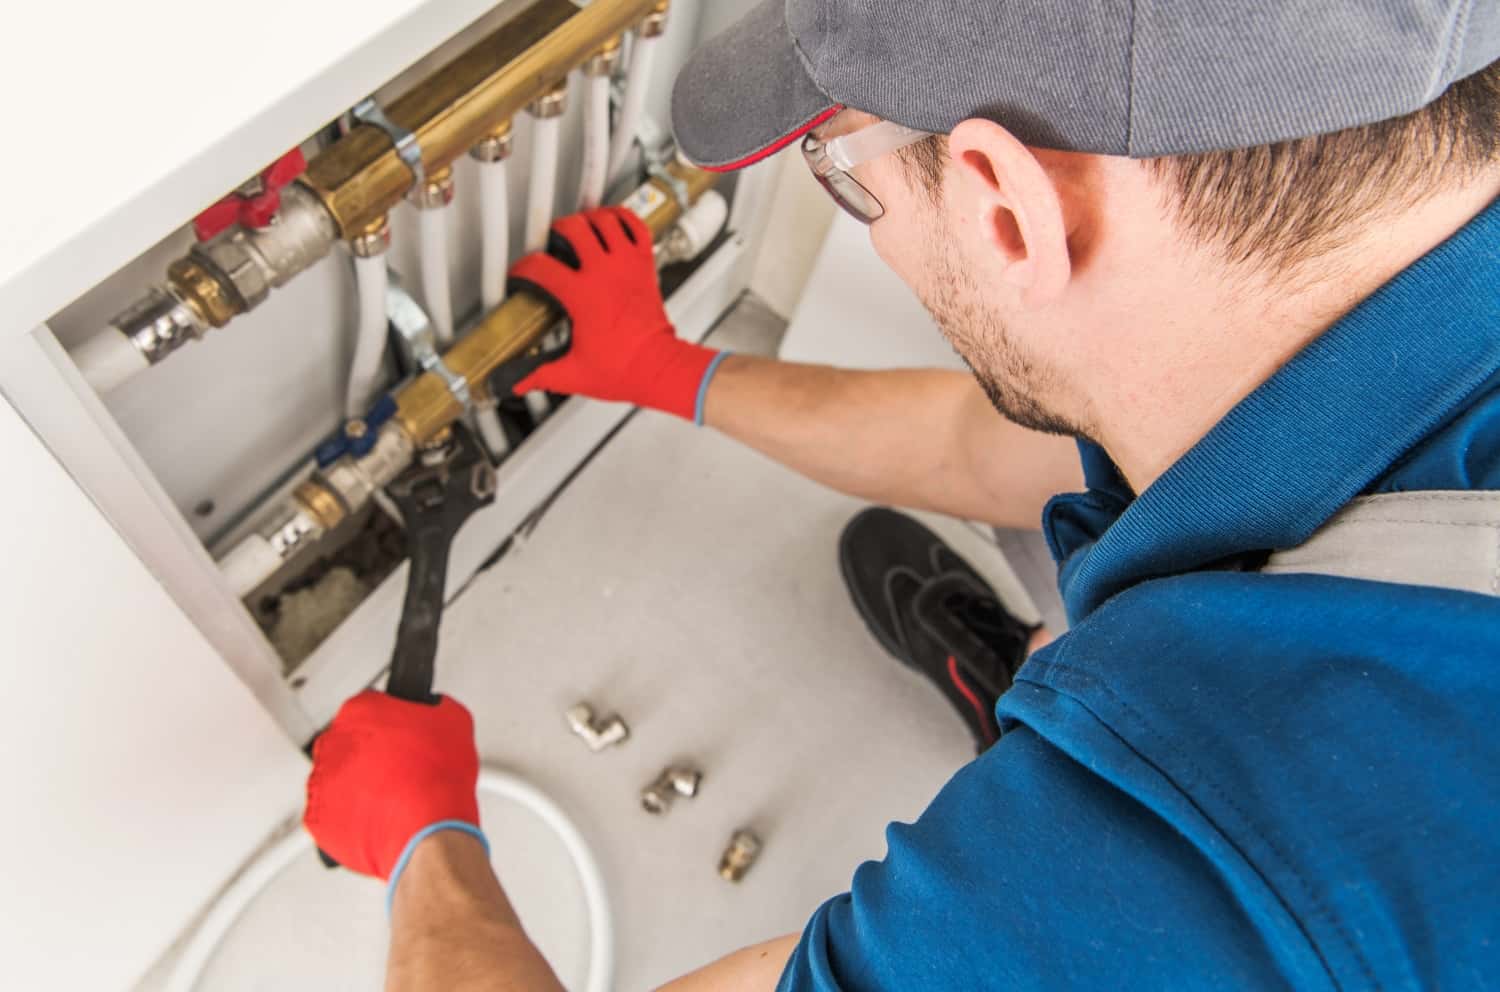 plumbing system fix job 2022 12 16 11 45 48 utc min